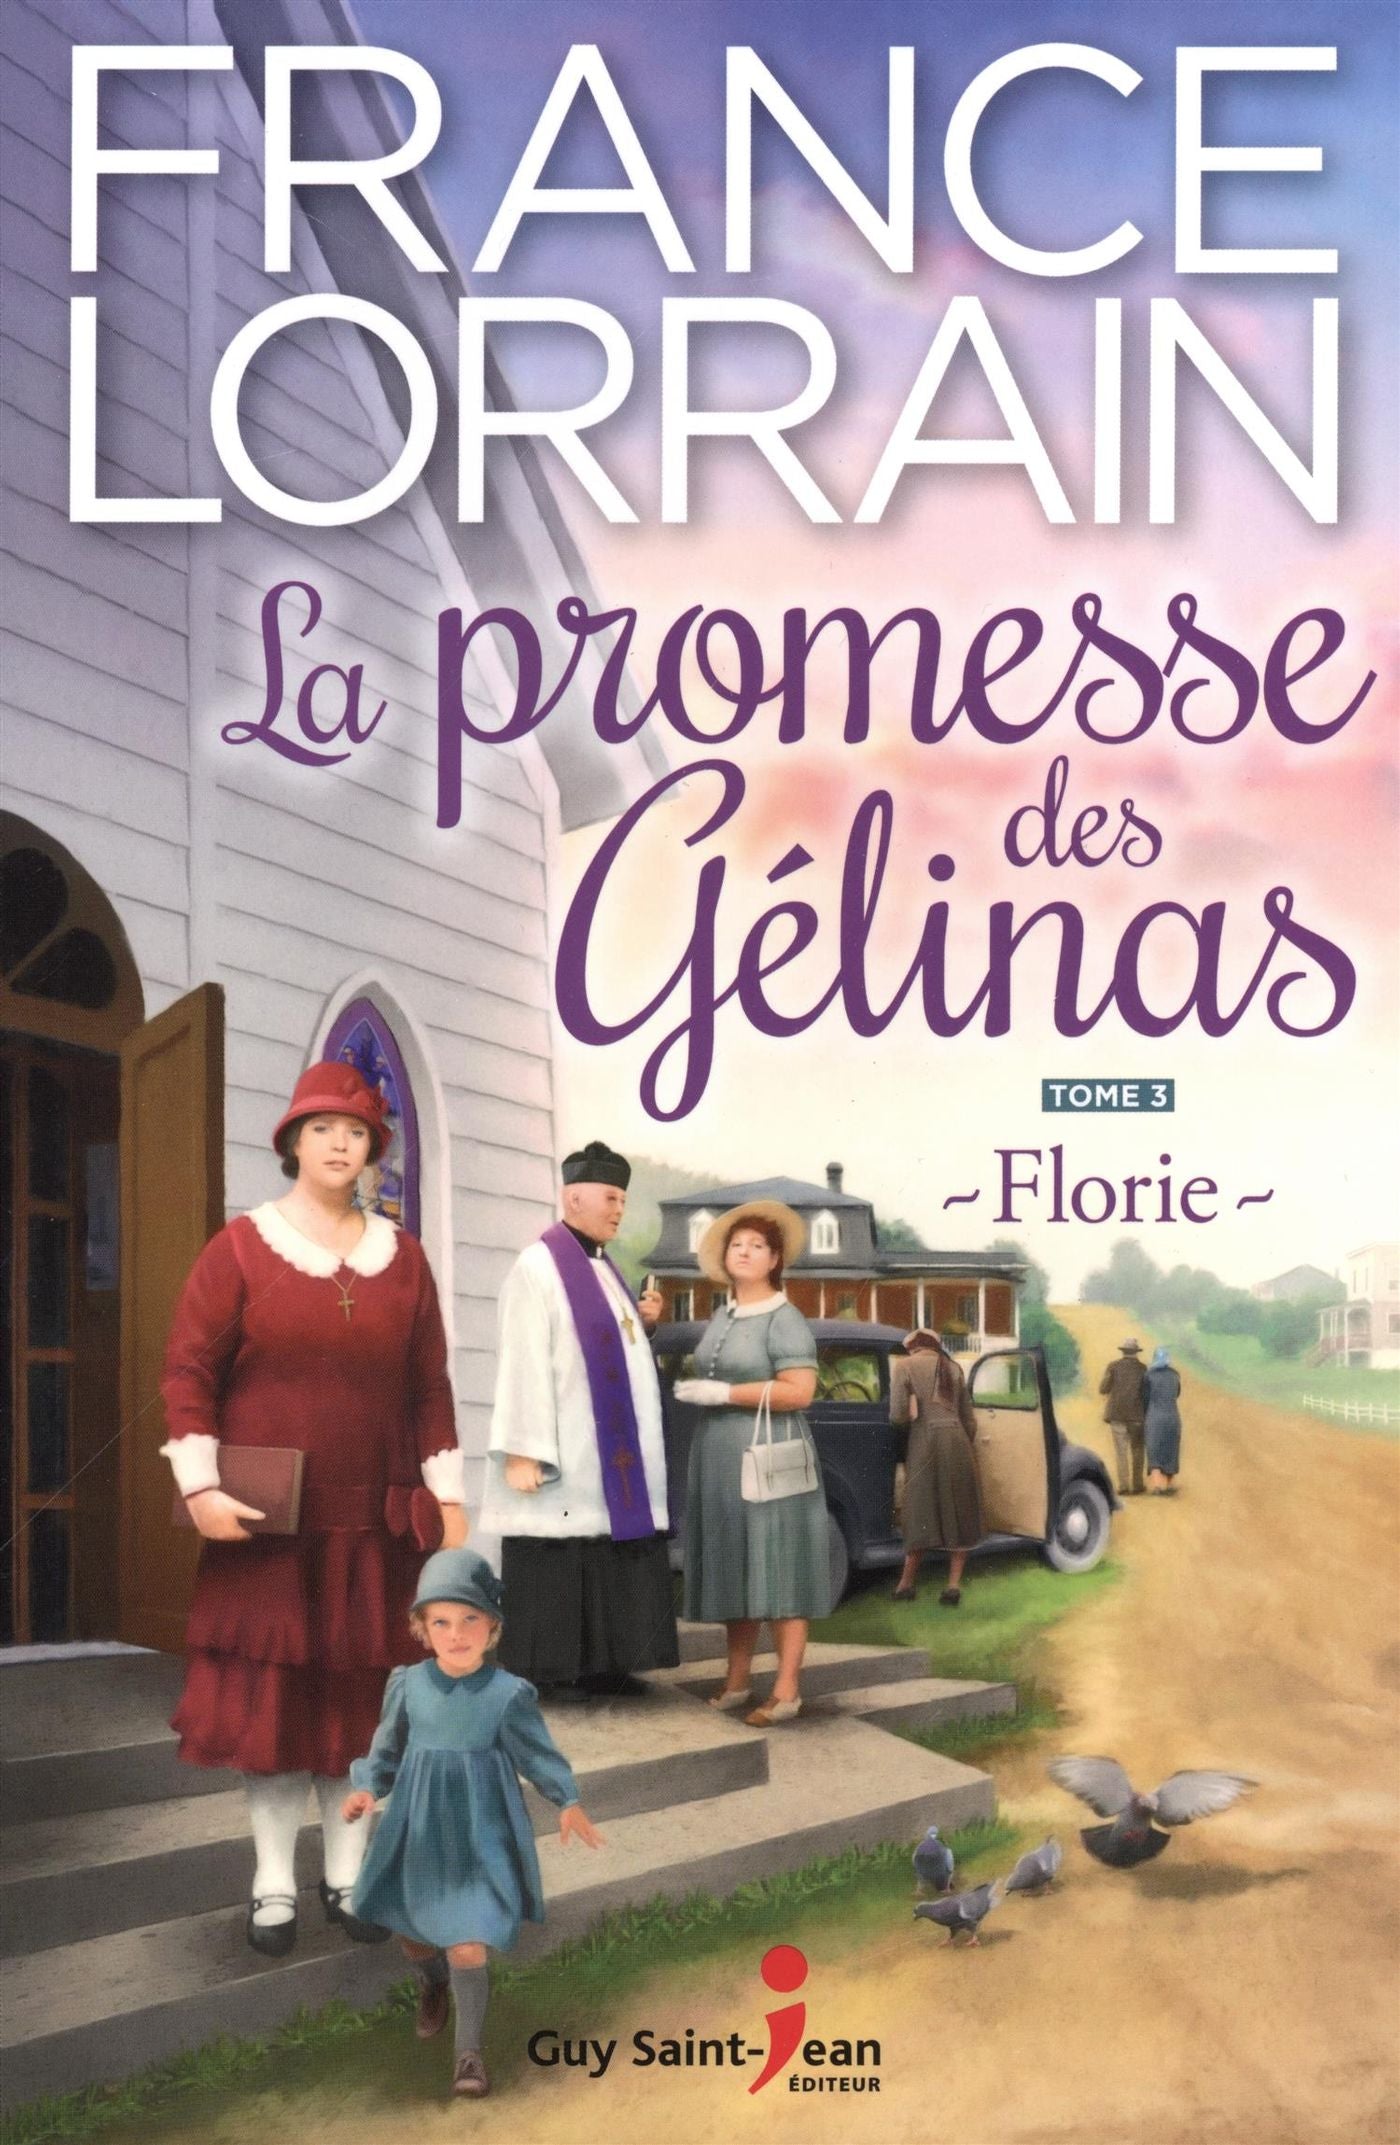 La promesse des Gélinas # 3 : Florie - France Lorrain